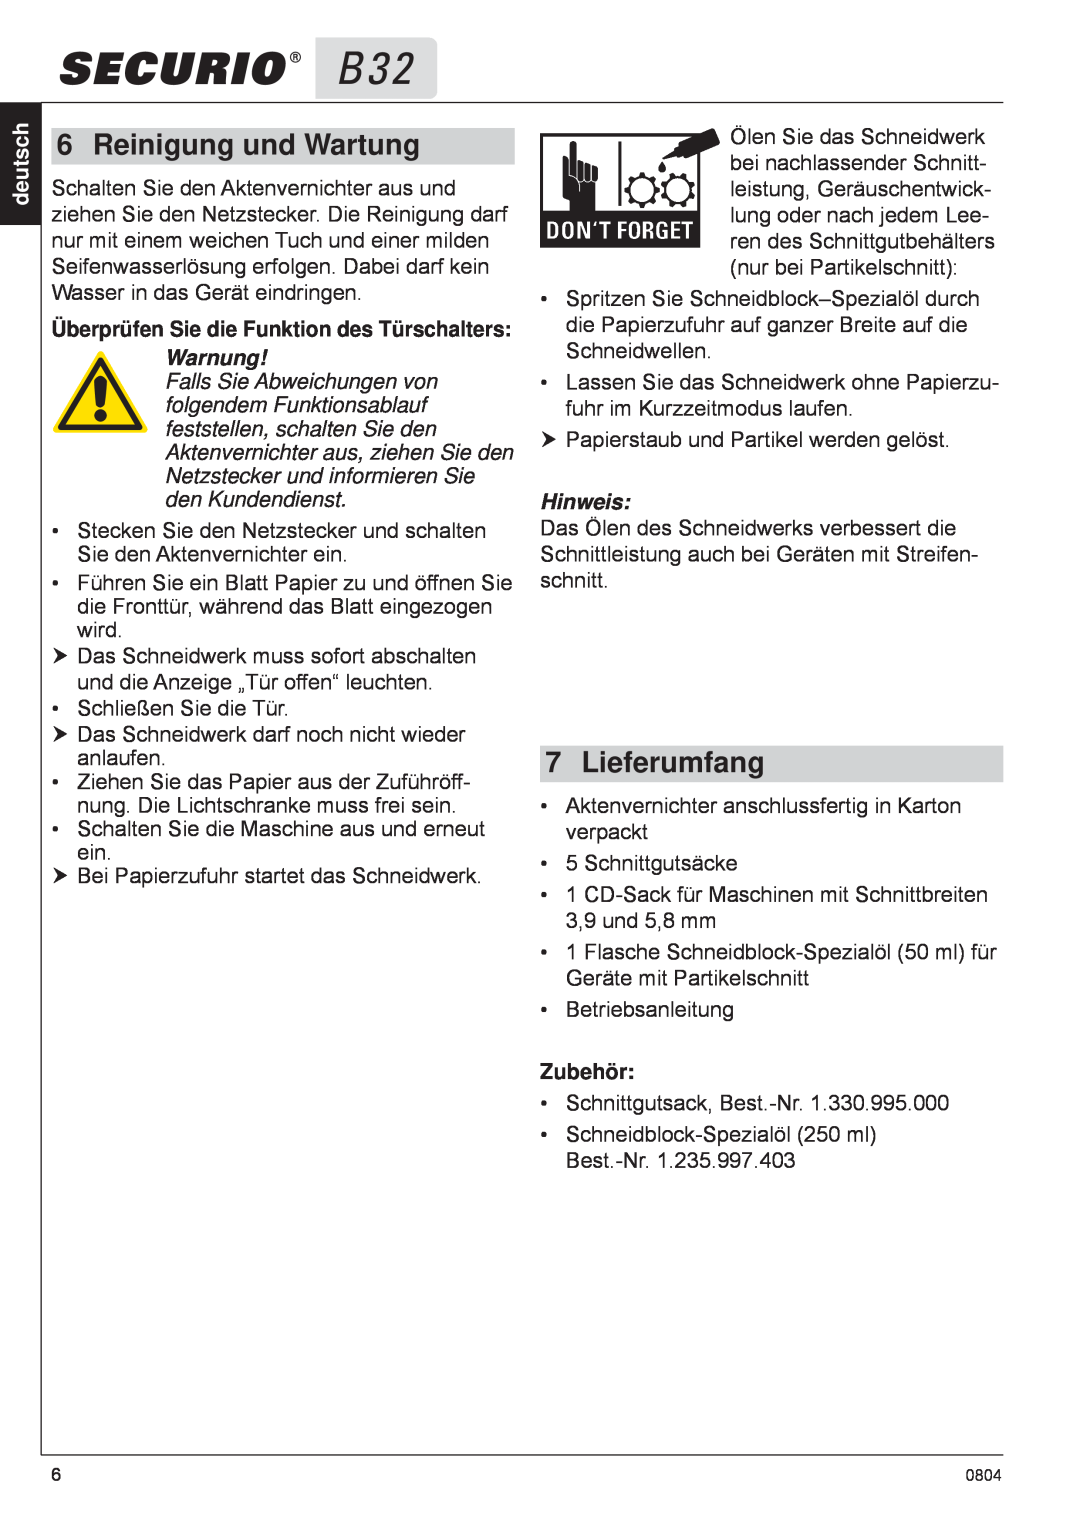 HSM B32 manual Reinigung und Wartung, Lieferumfang, Überprüfen Sie die Funktion des Türschalters, Warnung, Zubehör, deutsch 